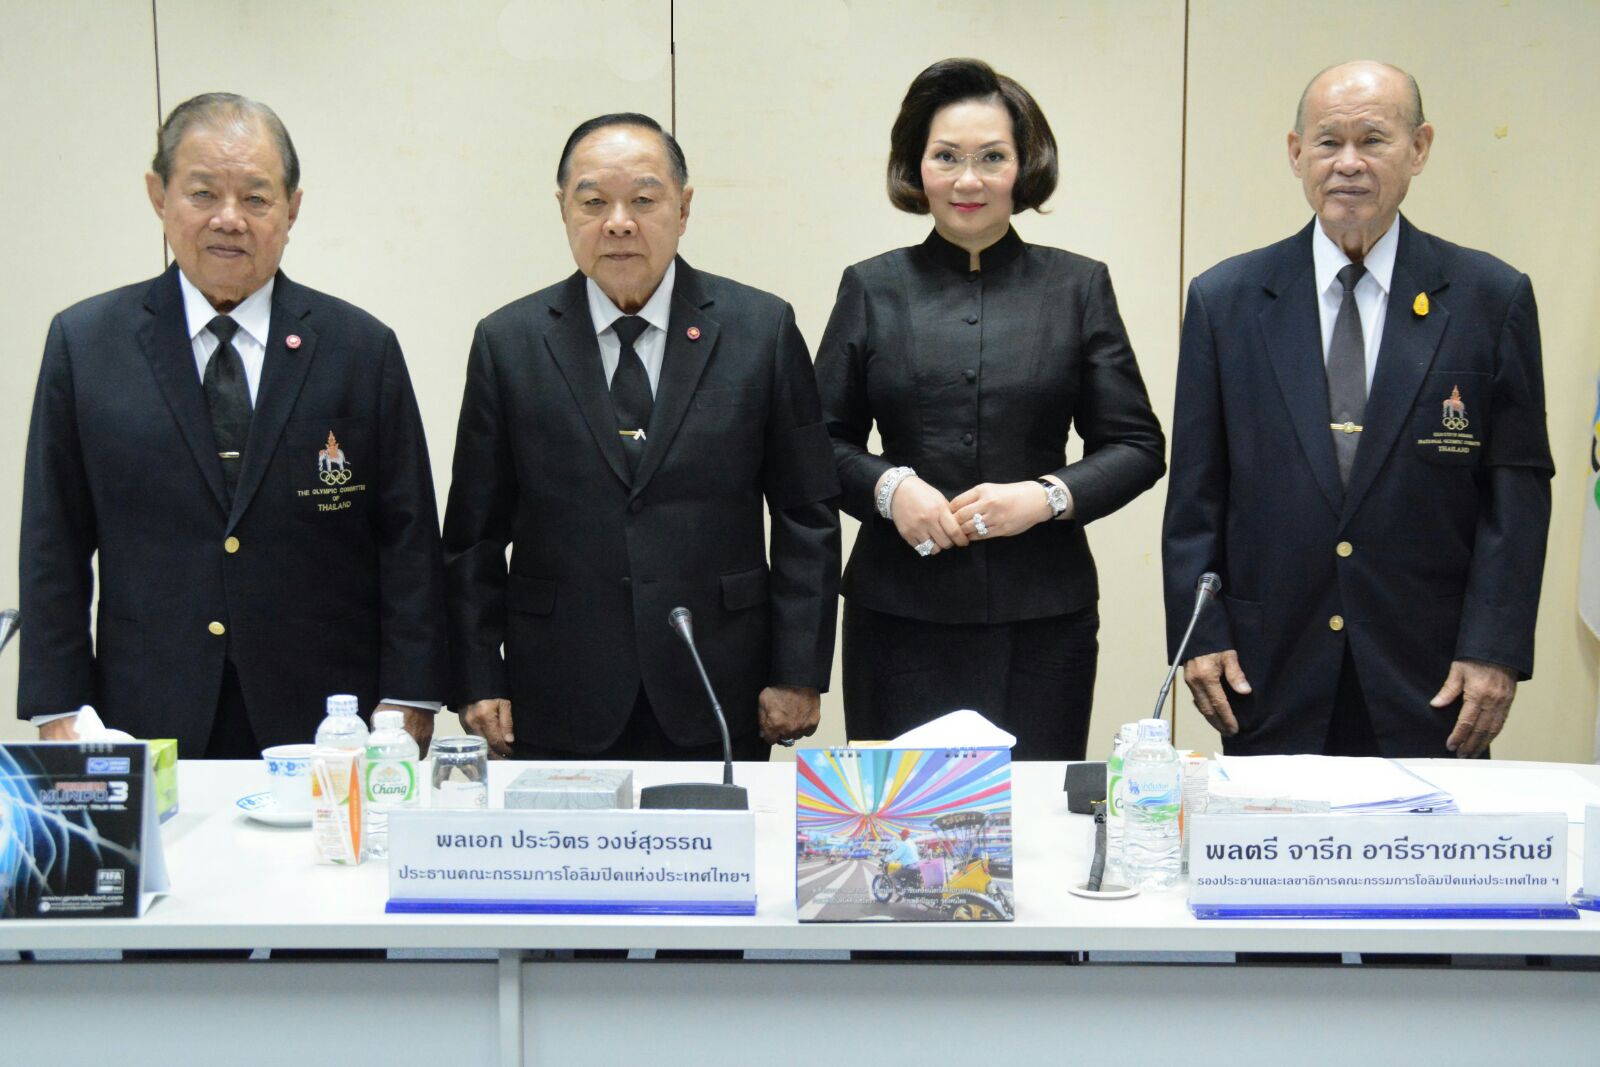 ประธานคณะกรรมการโอลิมปิคแห่งประเทศไทยฯ แสดงความยินดีกับ ไอโอซีเมมเบอร์ ประเภทบุคคล ในคณะกรรมการโอลิมปิกสากล